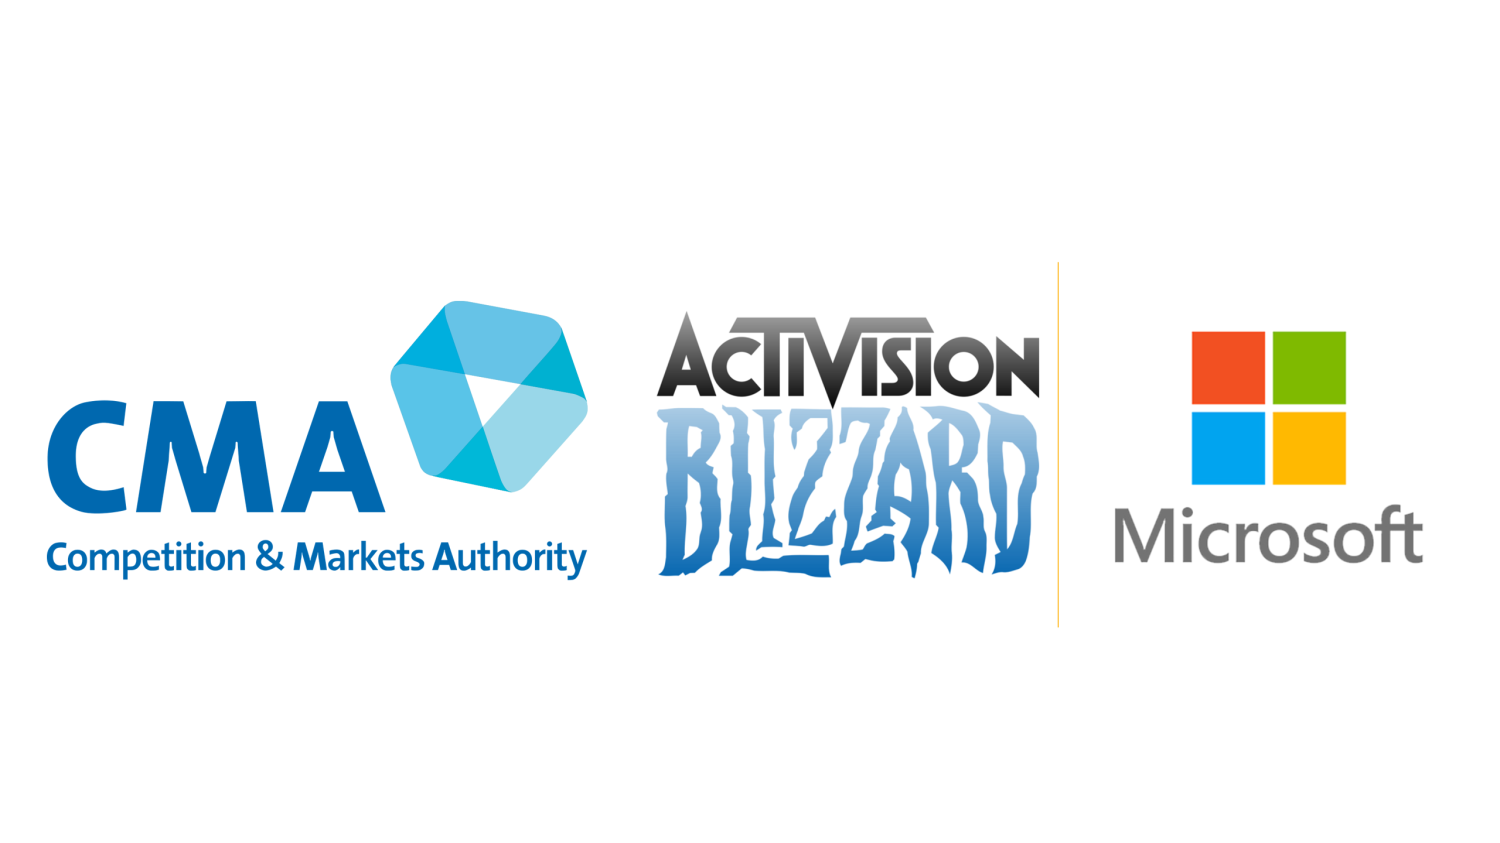 EA CEO称微软收购动视暴雪能否成功 对他们来说不重要 EA CEO不在乎微软收购动视暴雪能否成功